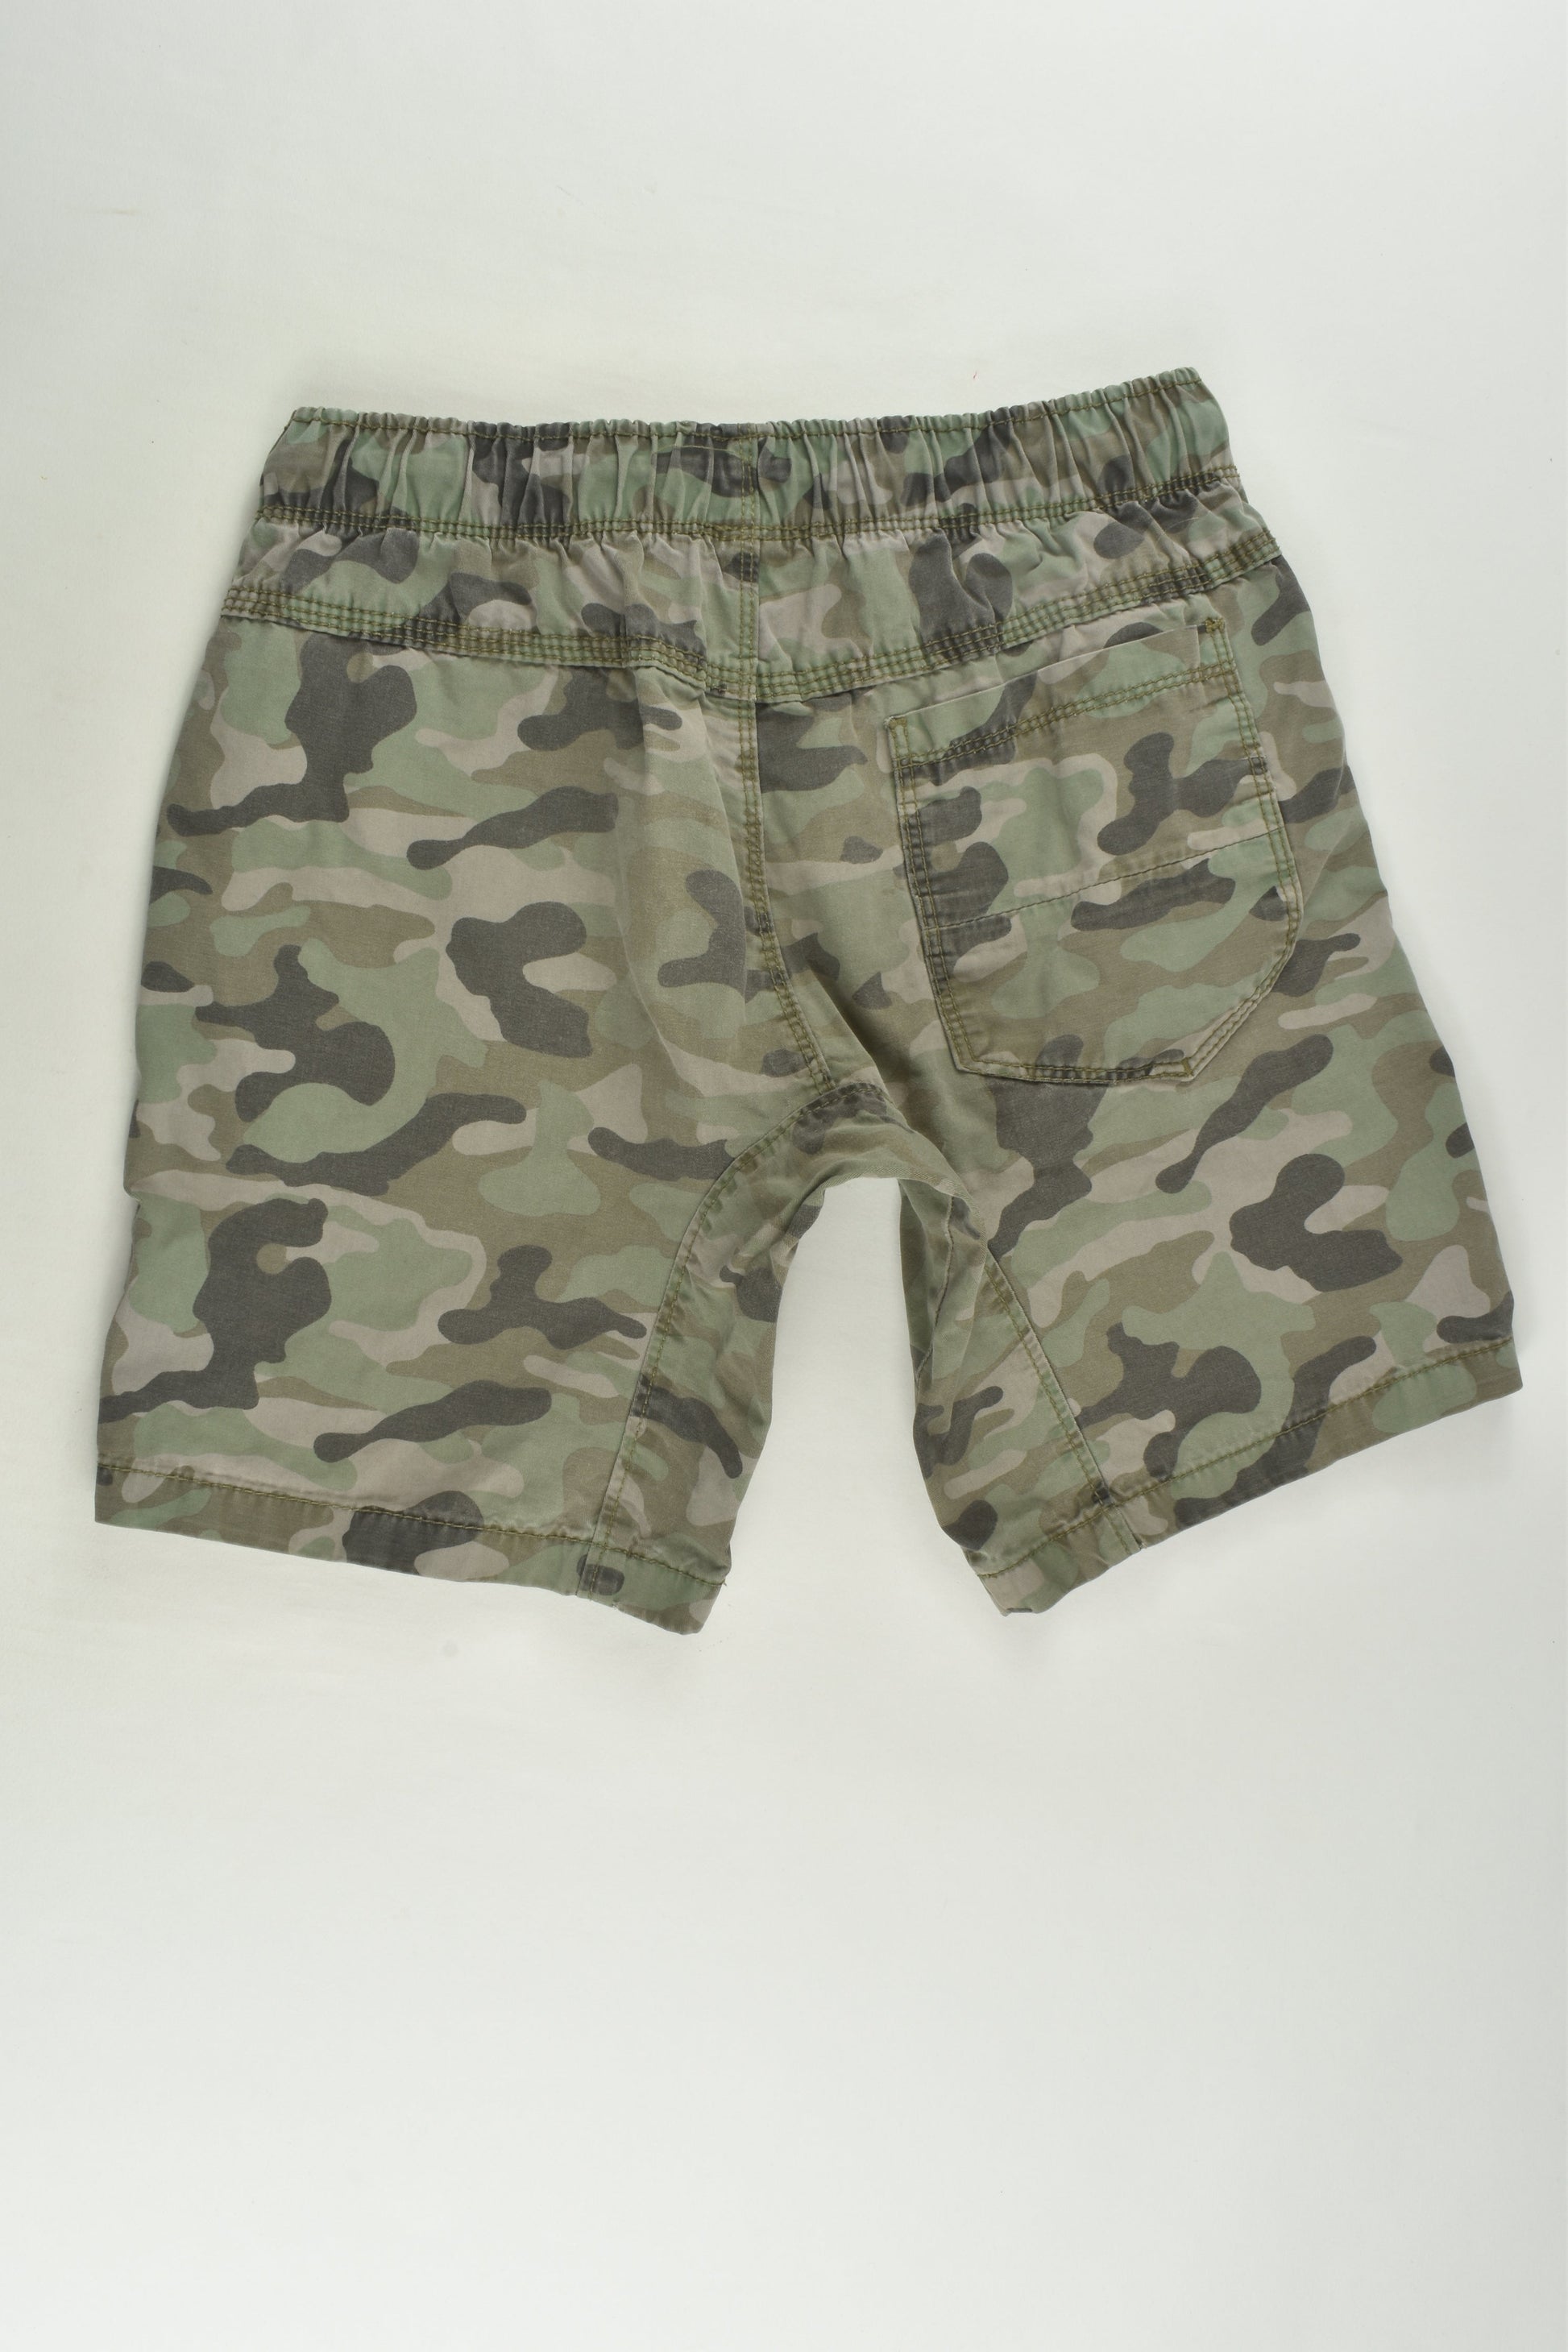 Target Size 10 Camouflage Shorts